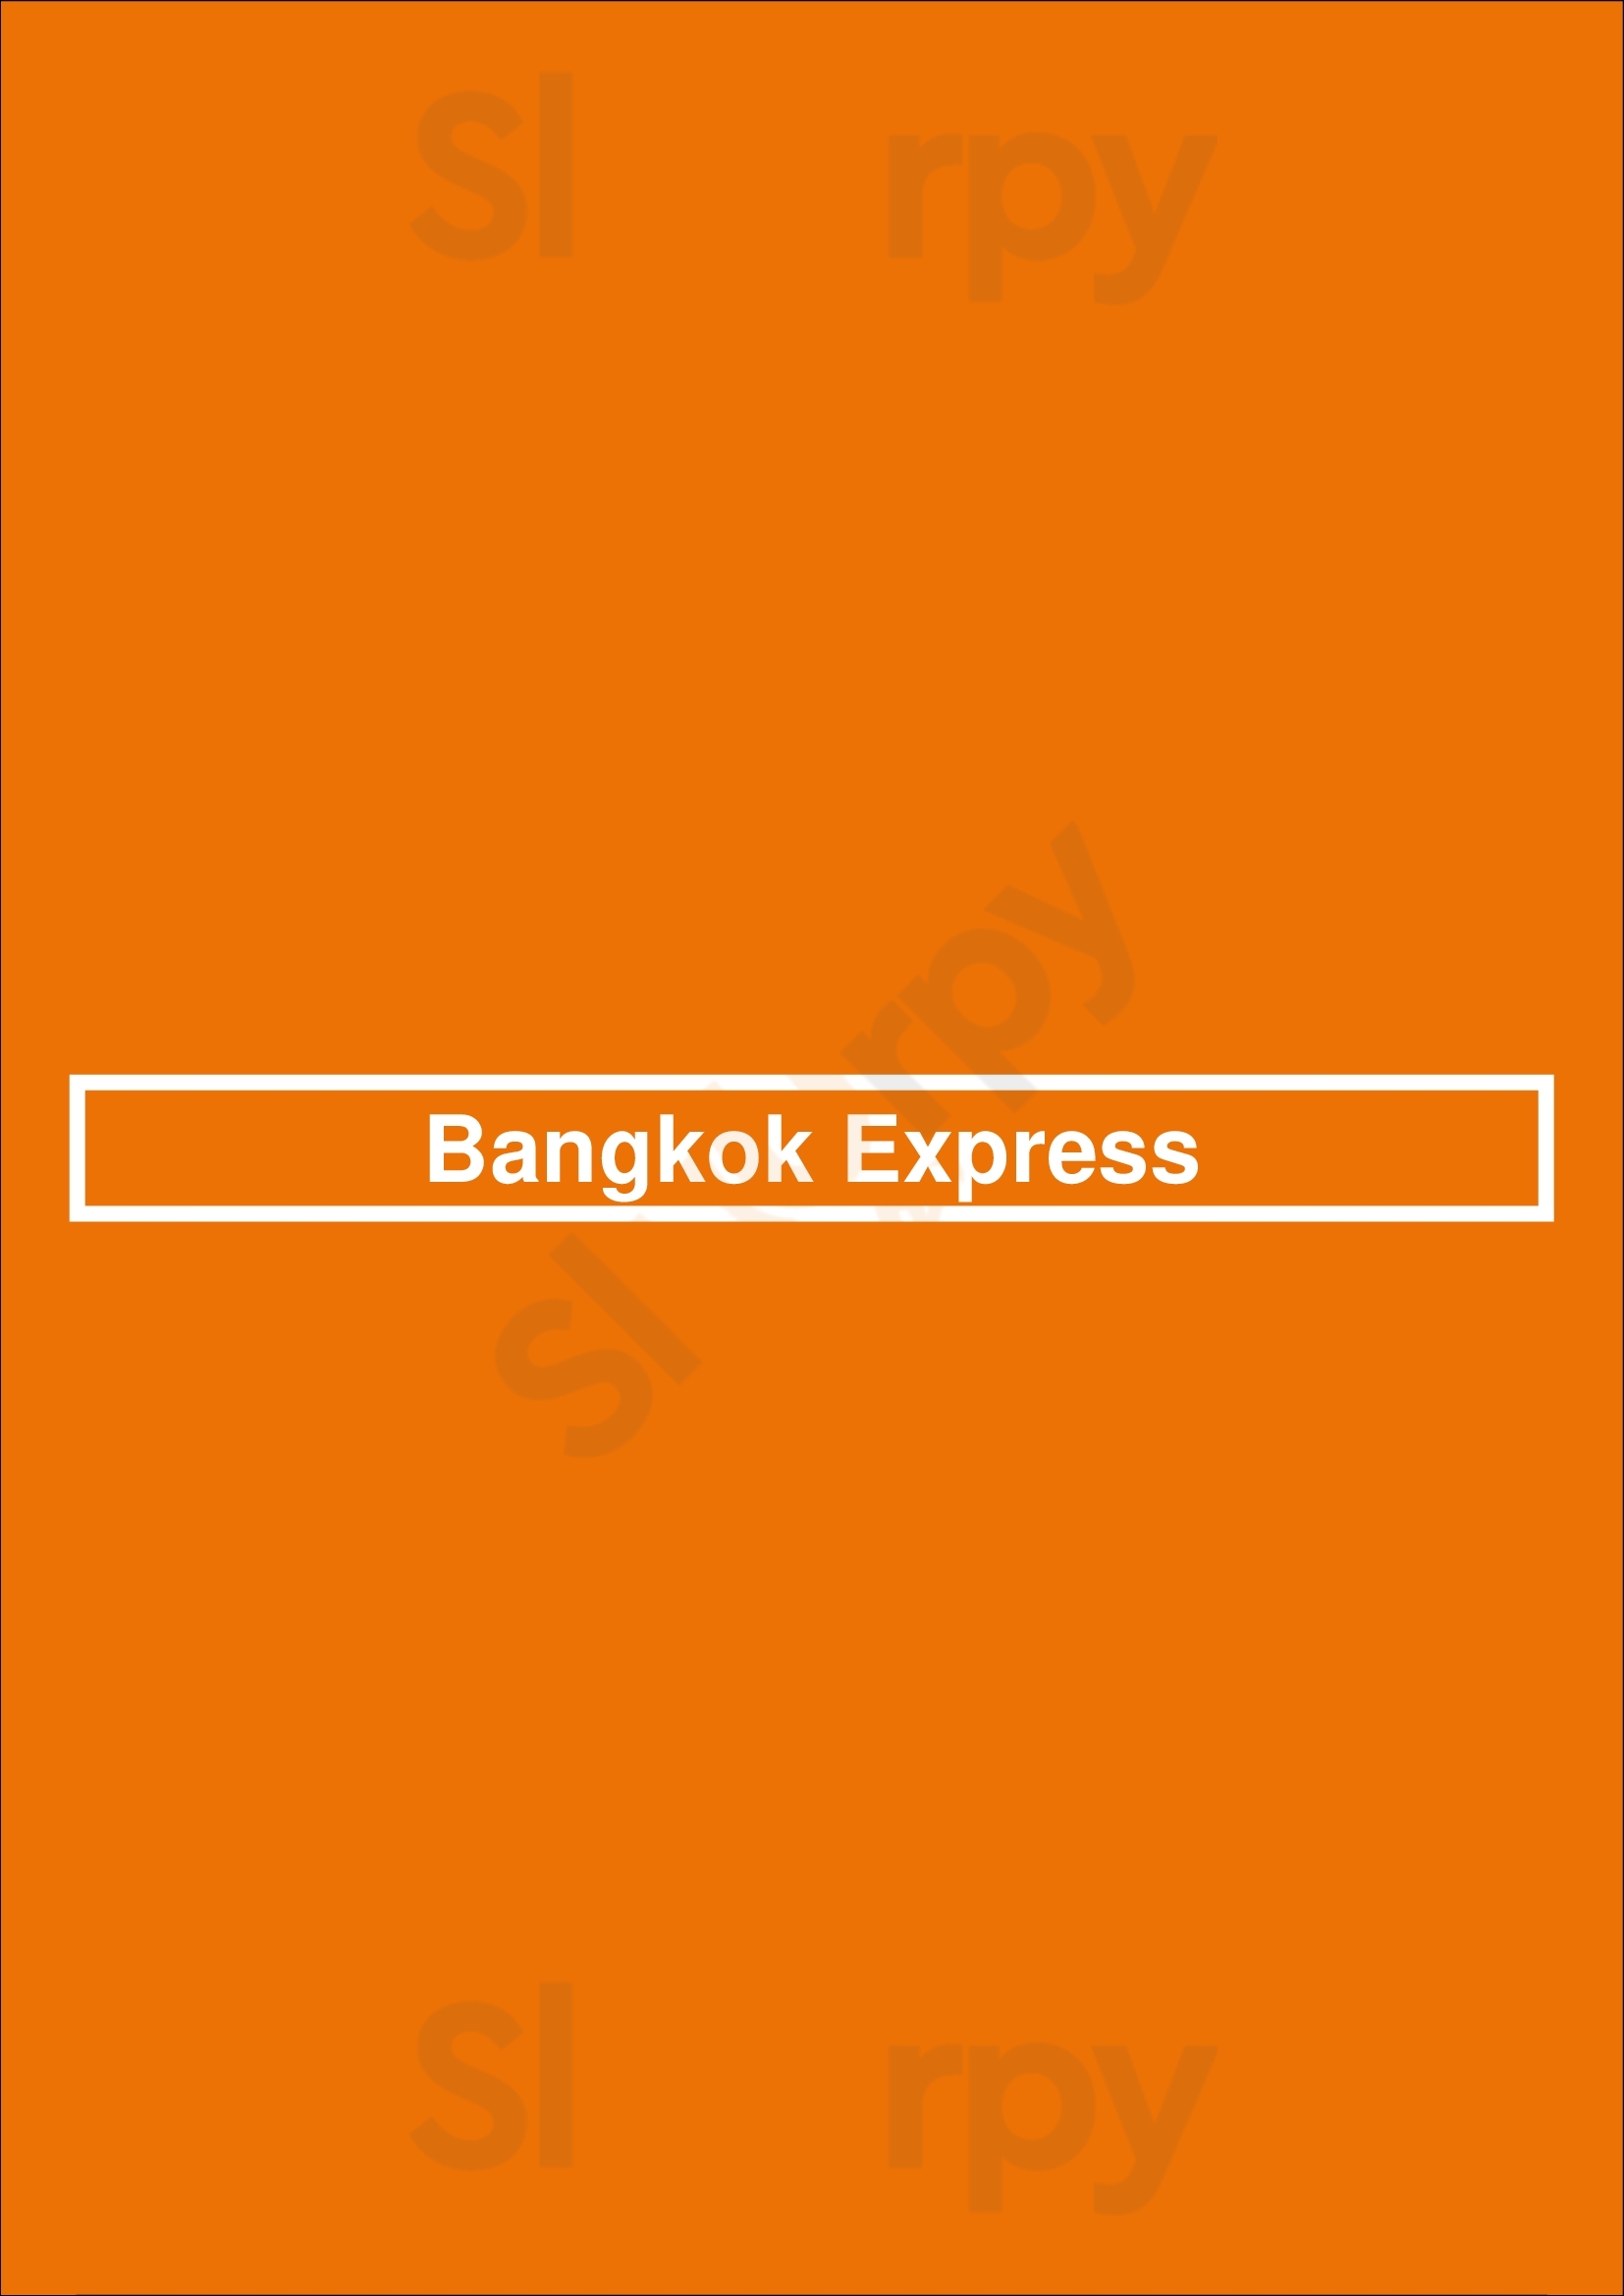 Bangkok Express Clearwater Menu - 1